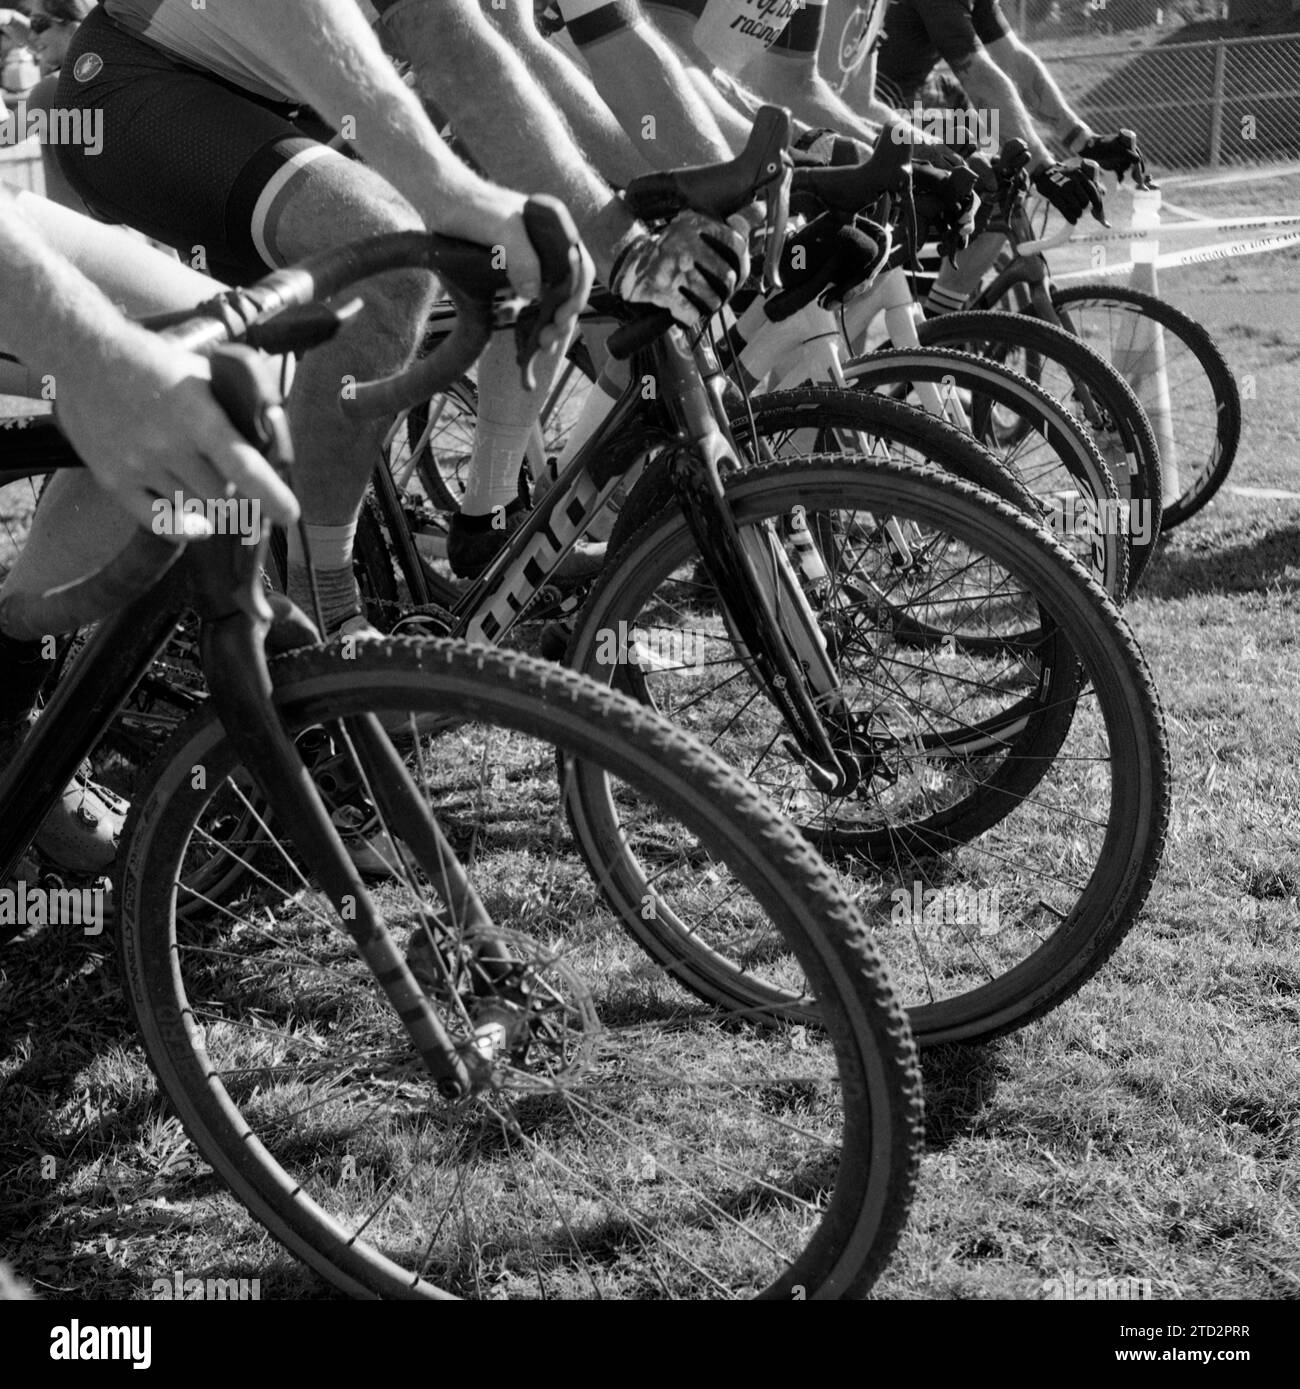 HB49917-00....WASHINGTON - linea di partenza di una gara di ciclocross maschile. Telecamera TLR Rolleicord con pellicola Ilford HP5 Plus. Foto Stock